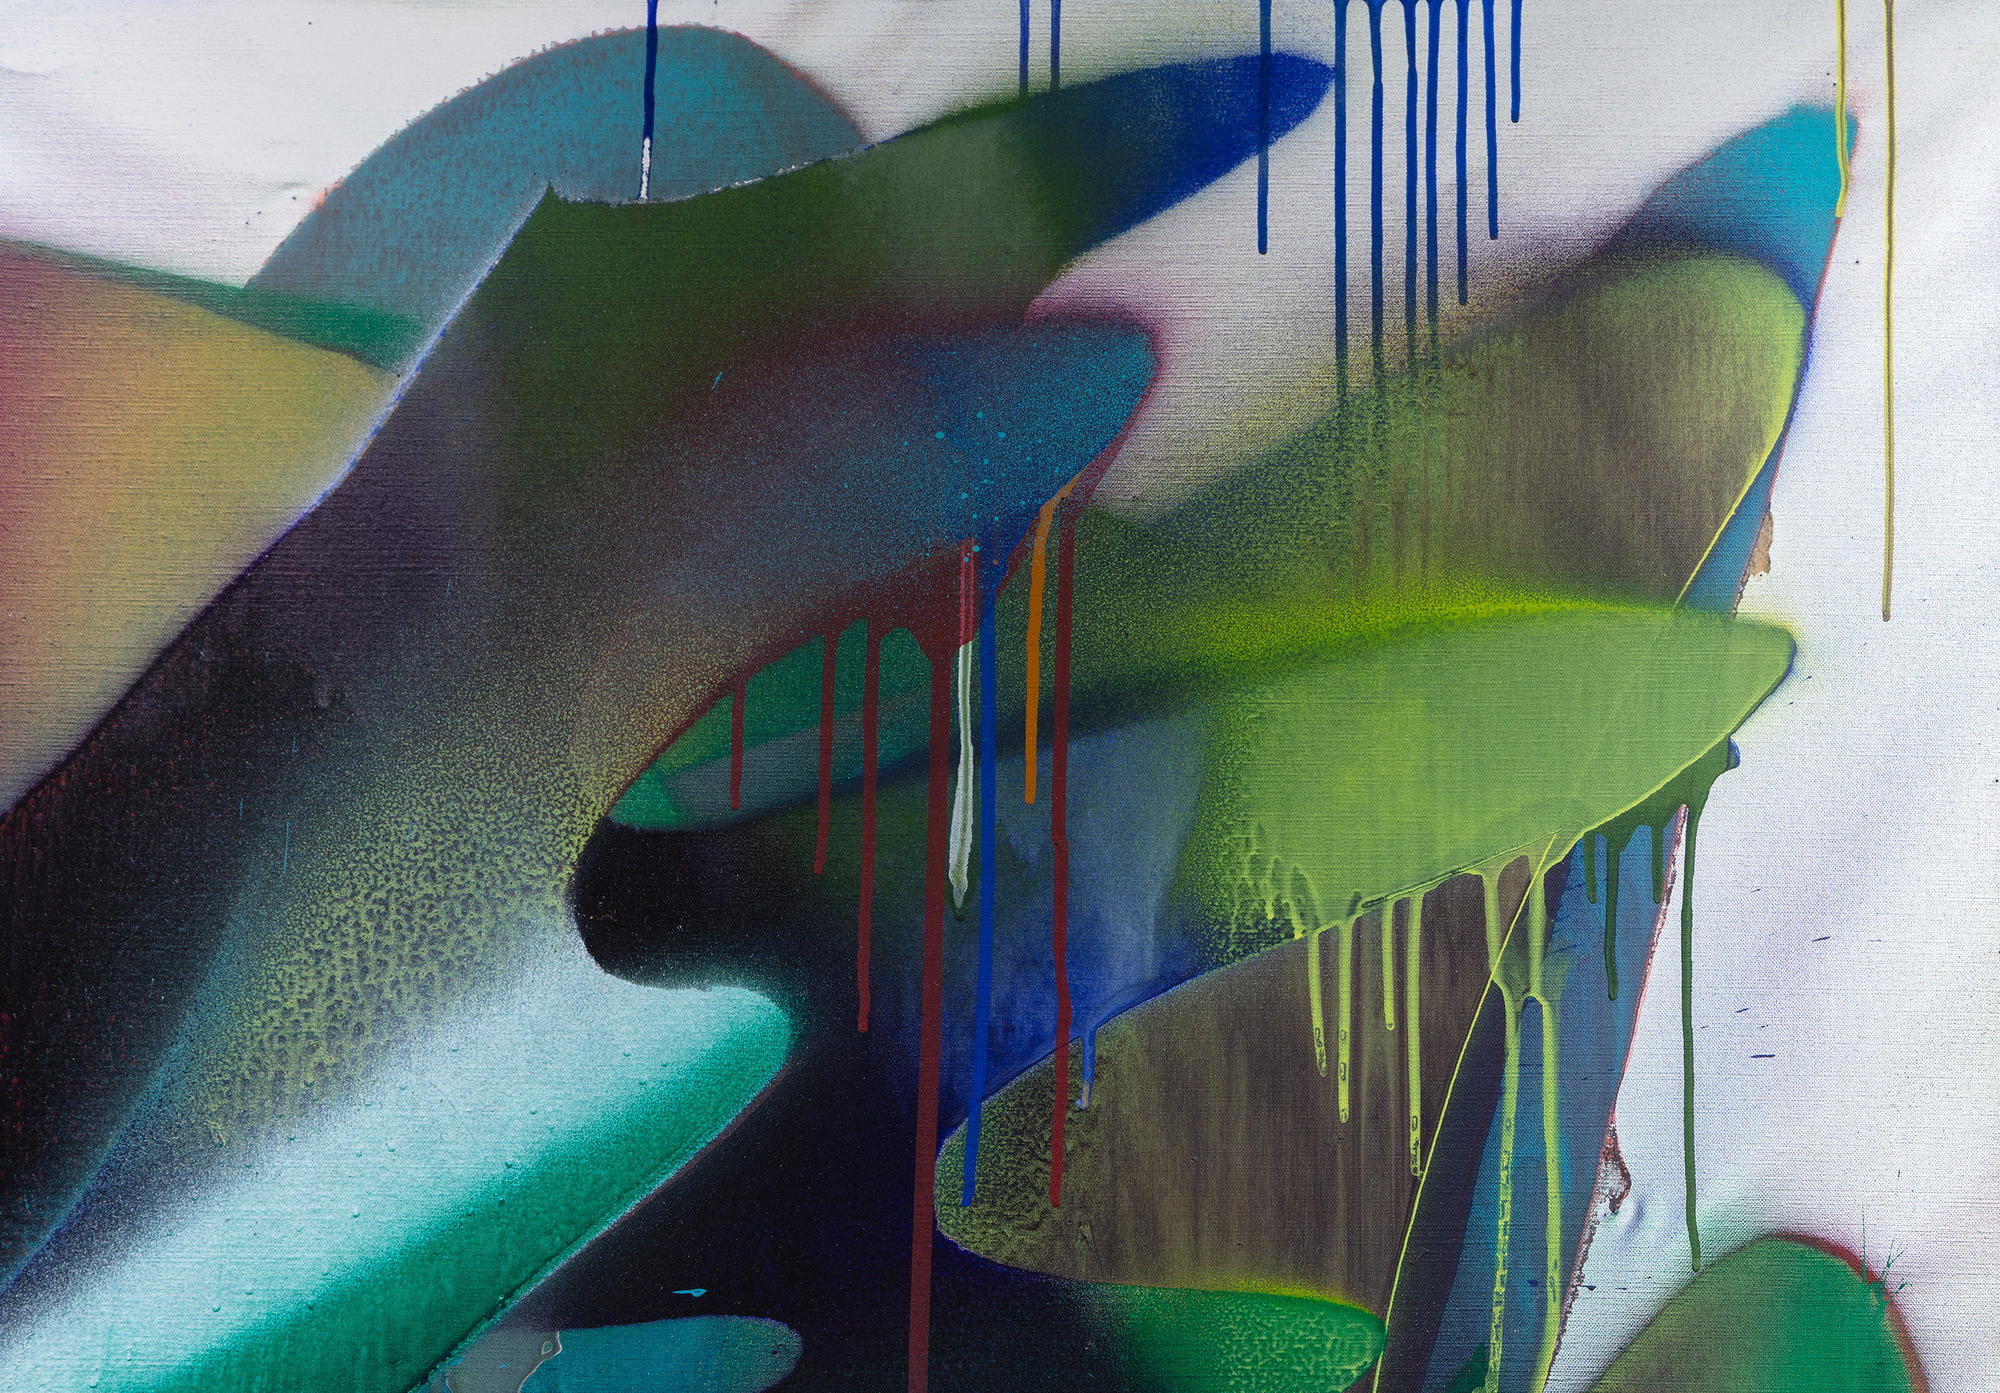 凯瑟琳-格罗斯（Katharine Grosse）2016 年的《无题》将我们对这位艺术家的欣赏延伸到了画布颜料这一传统媒介上，她将在其不朽建筑装置作品中看到的活力、大胆和对传统的漠视带到了画布上。色彩从复杂而层次丰富的表面中迸发出来，这些表面由流淌、滴落或飞溅的颜料浇筑而成，还有光芒四射的透明面纱，以及雾状的重叠色带，形成柔和的渐变过渡。作品给人以空间深度和立体感的迷人印象。同时，这也是格罗斯将混乱与控制、自发性与意向性完美融合的杰作。她的一系列技法在偶然与刻意之间创造了引人入胜的对话，这是她独特风格的标志。